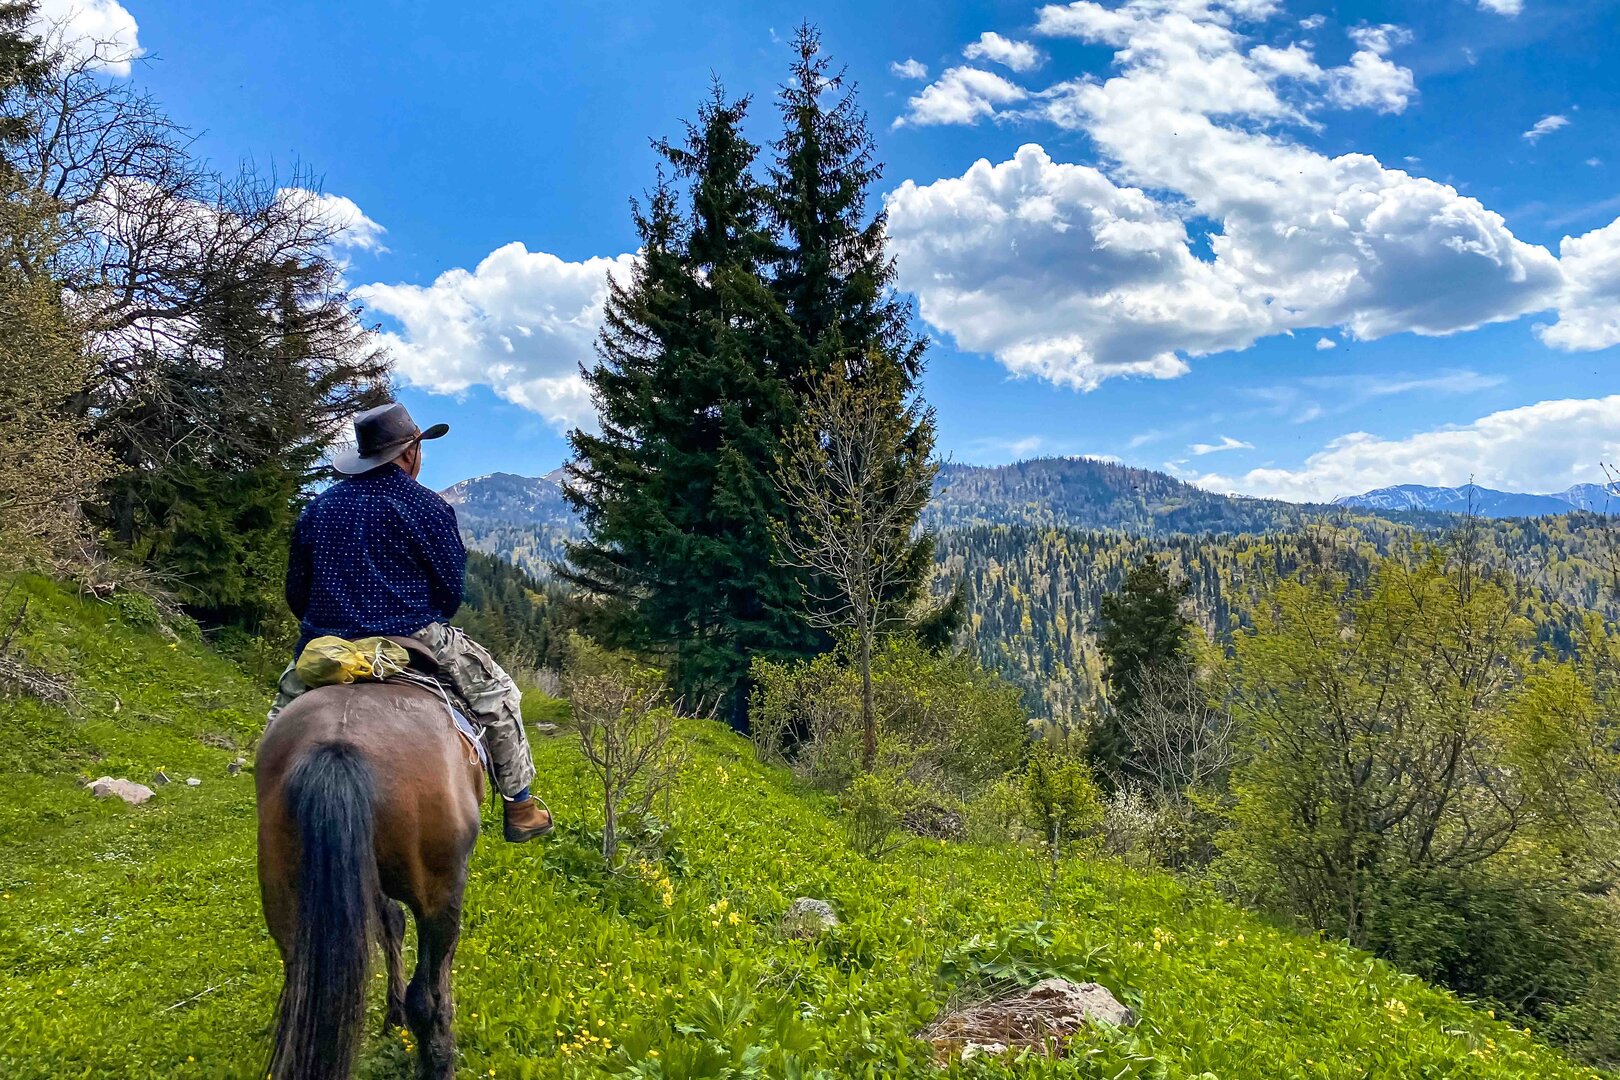 1 Day Horse Riding Tour in Borjomi